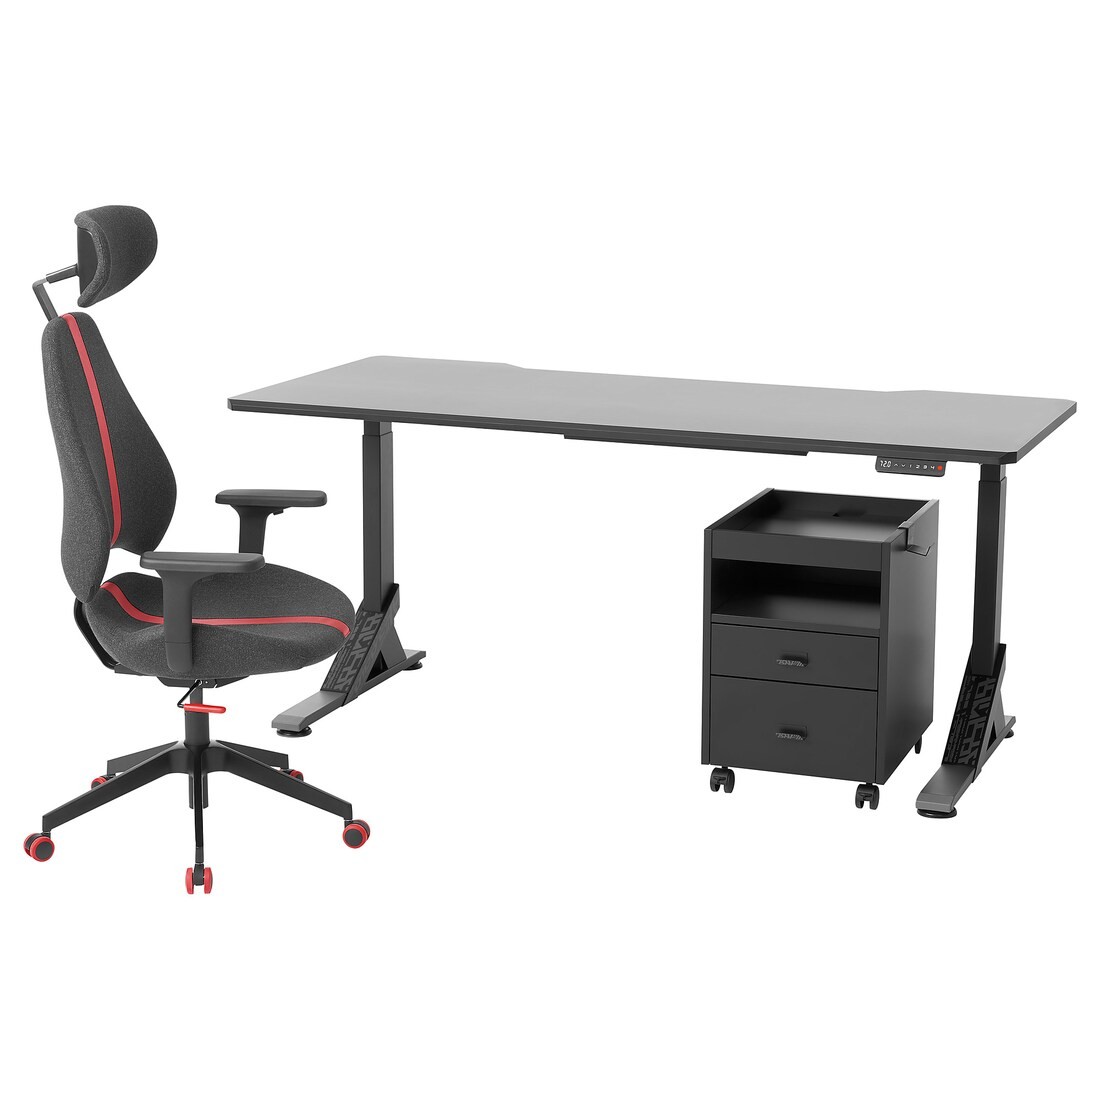 UPPSPEL УППСПЕЛЬ / GRUPPSPEL Письменный стол, стул и комод, черный / серый, 180x80 cм